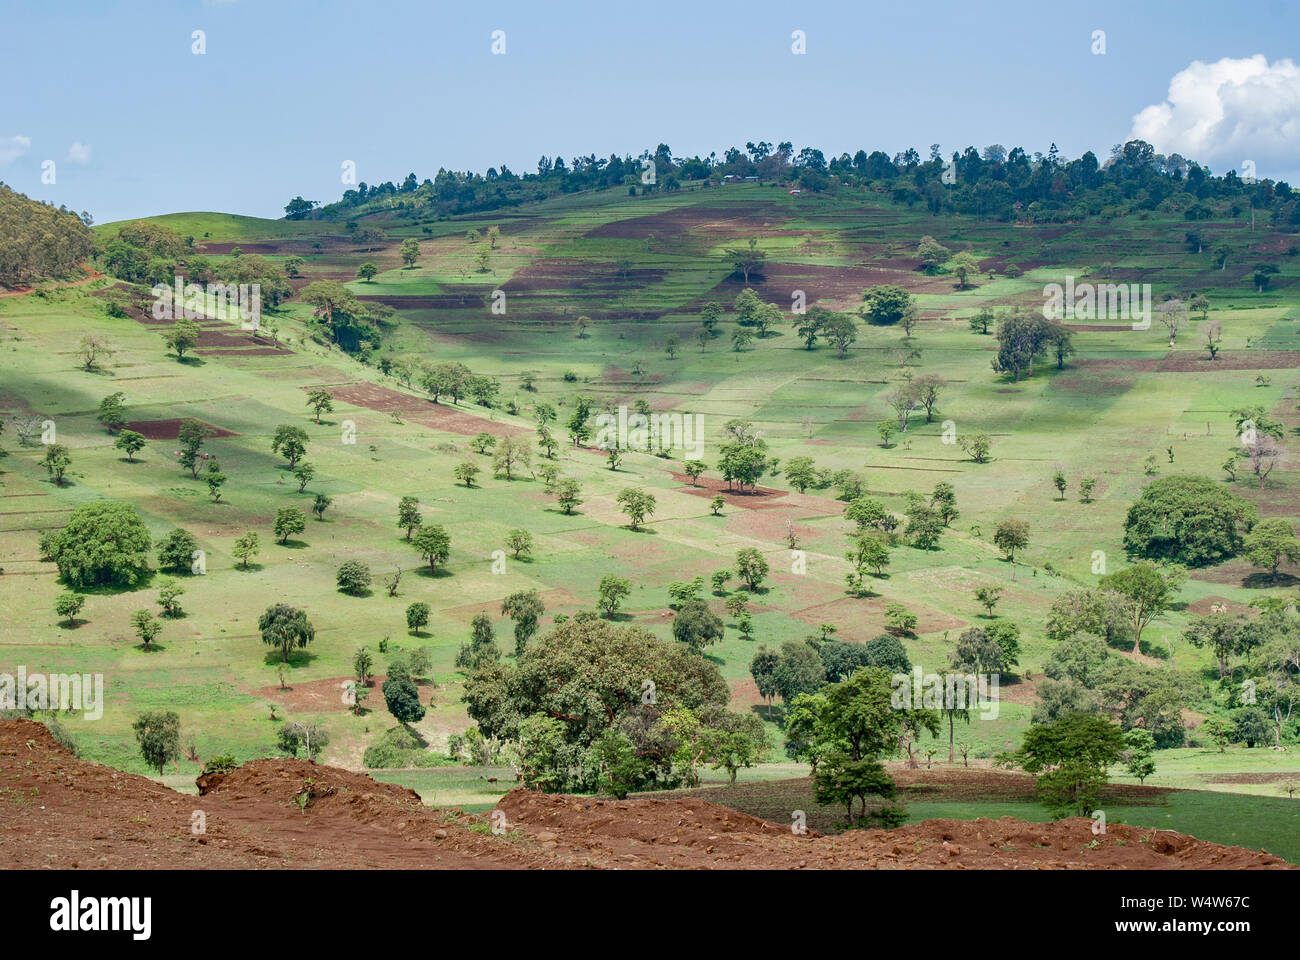 Landschaft in der Nähe von Bure, Illubabor, Äthiopien, Auswirkungen der Landwirtschaft auf die Umwelt durch die Bevölkerung umgesiedelt nach 1984 Hungersnot. Stockfoto